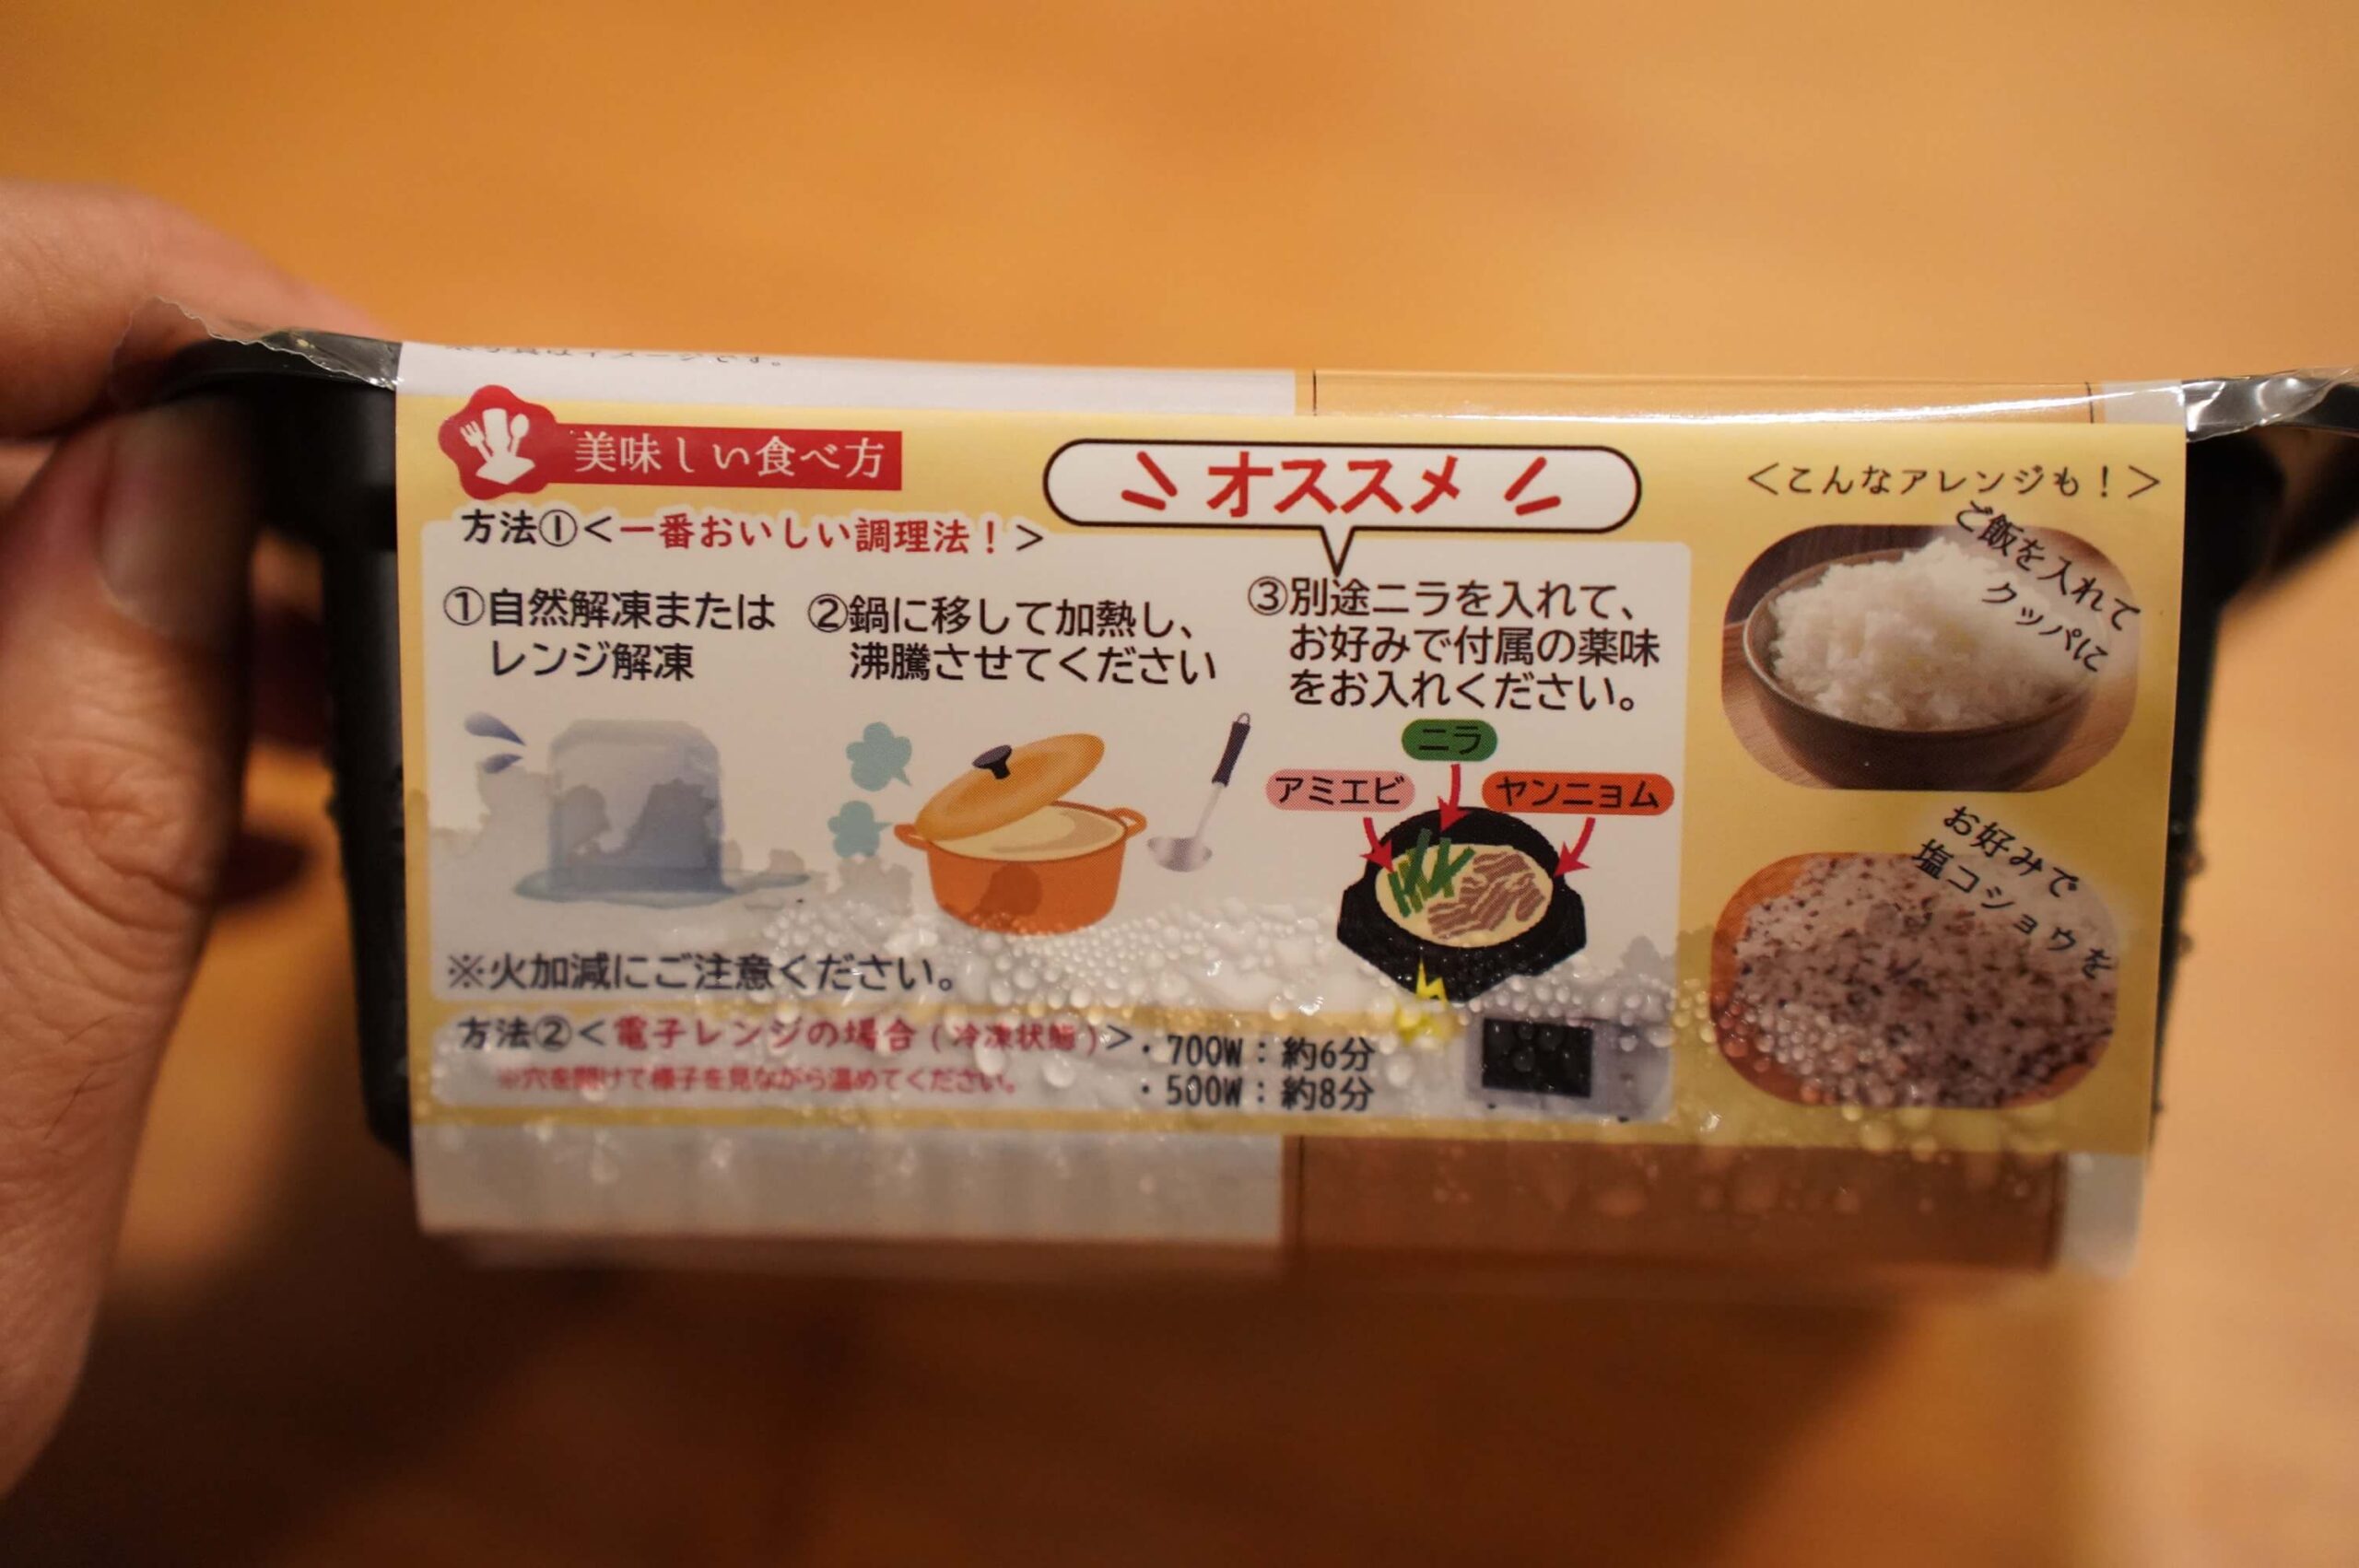 韓国料理「釜山テジクッパ」の調理方法を説明したパッケージの写真